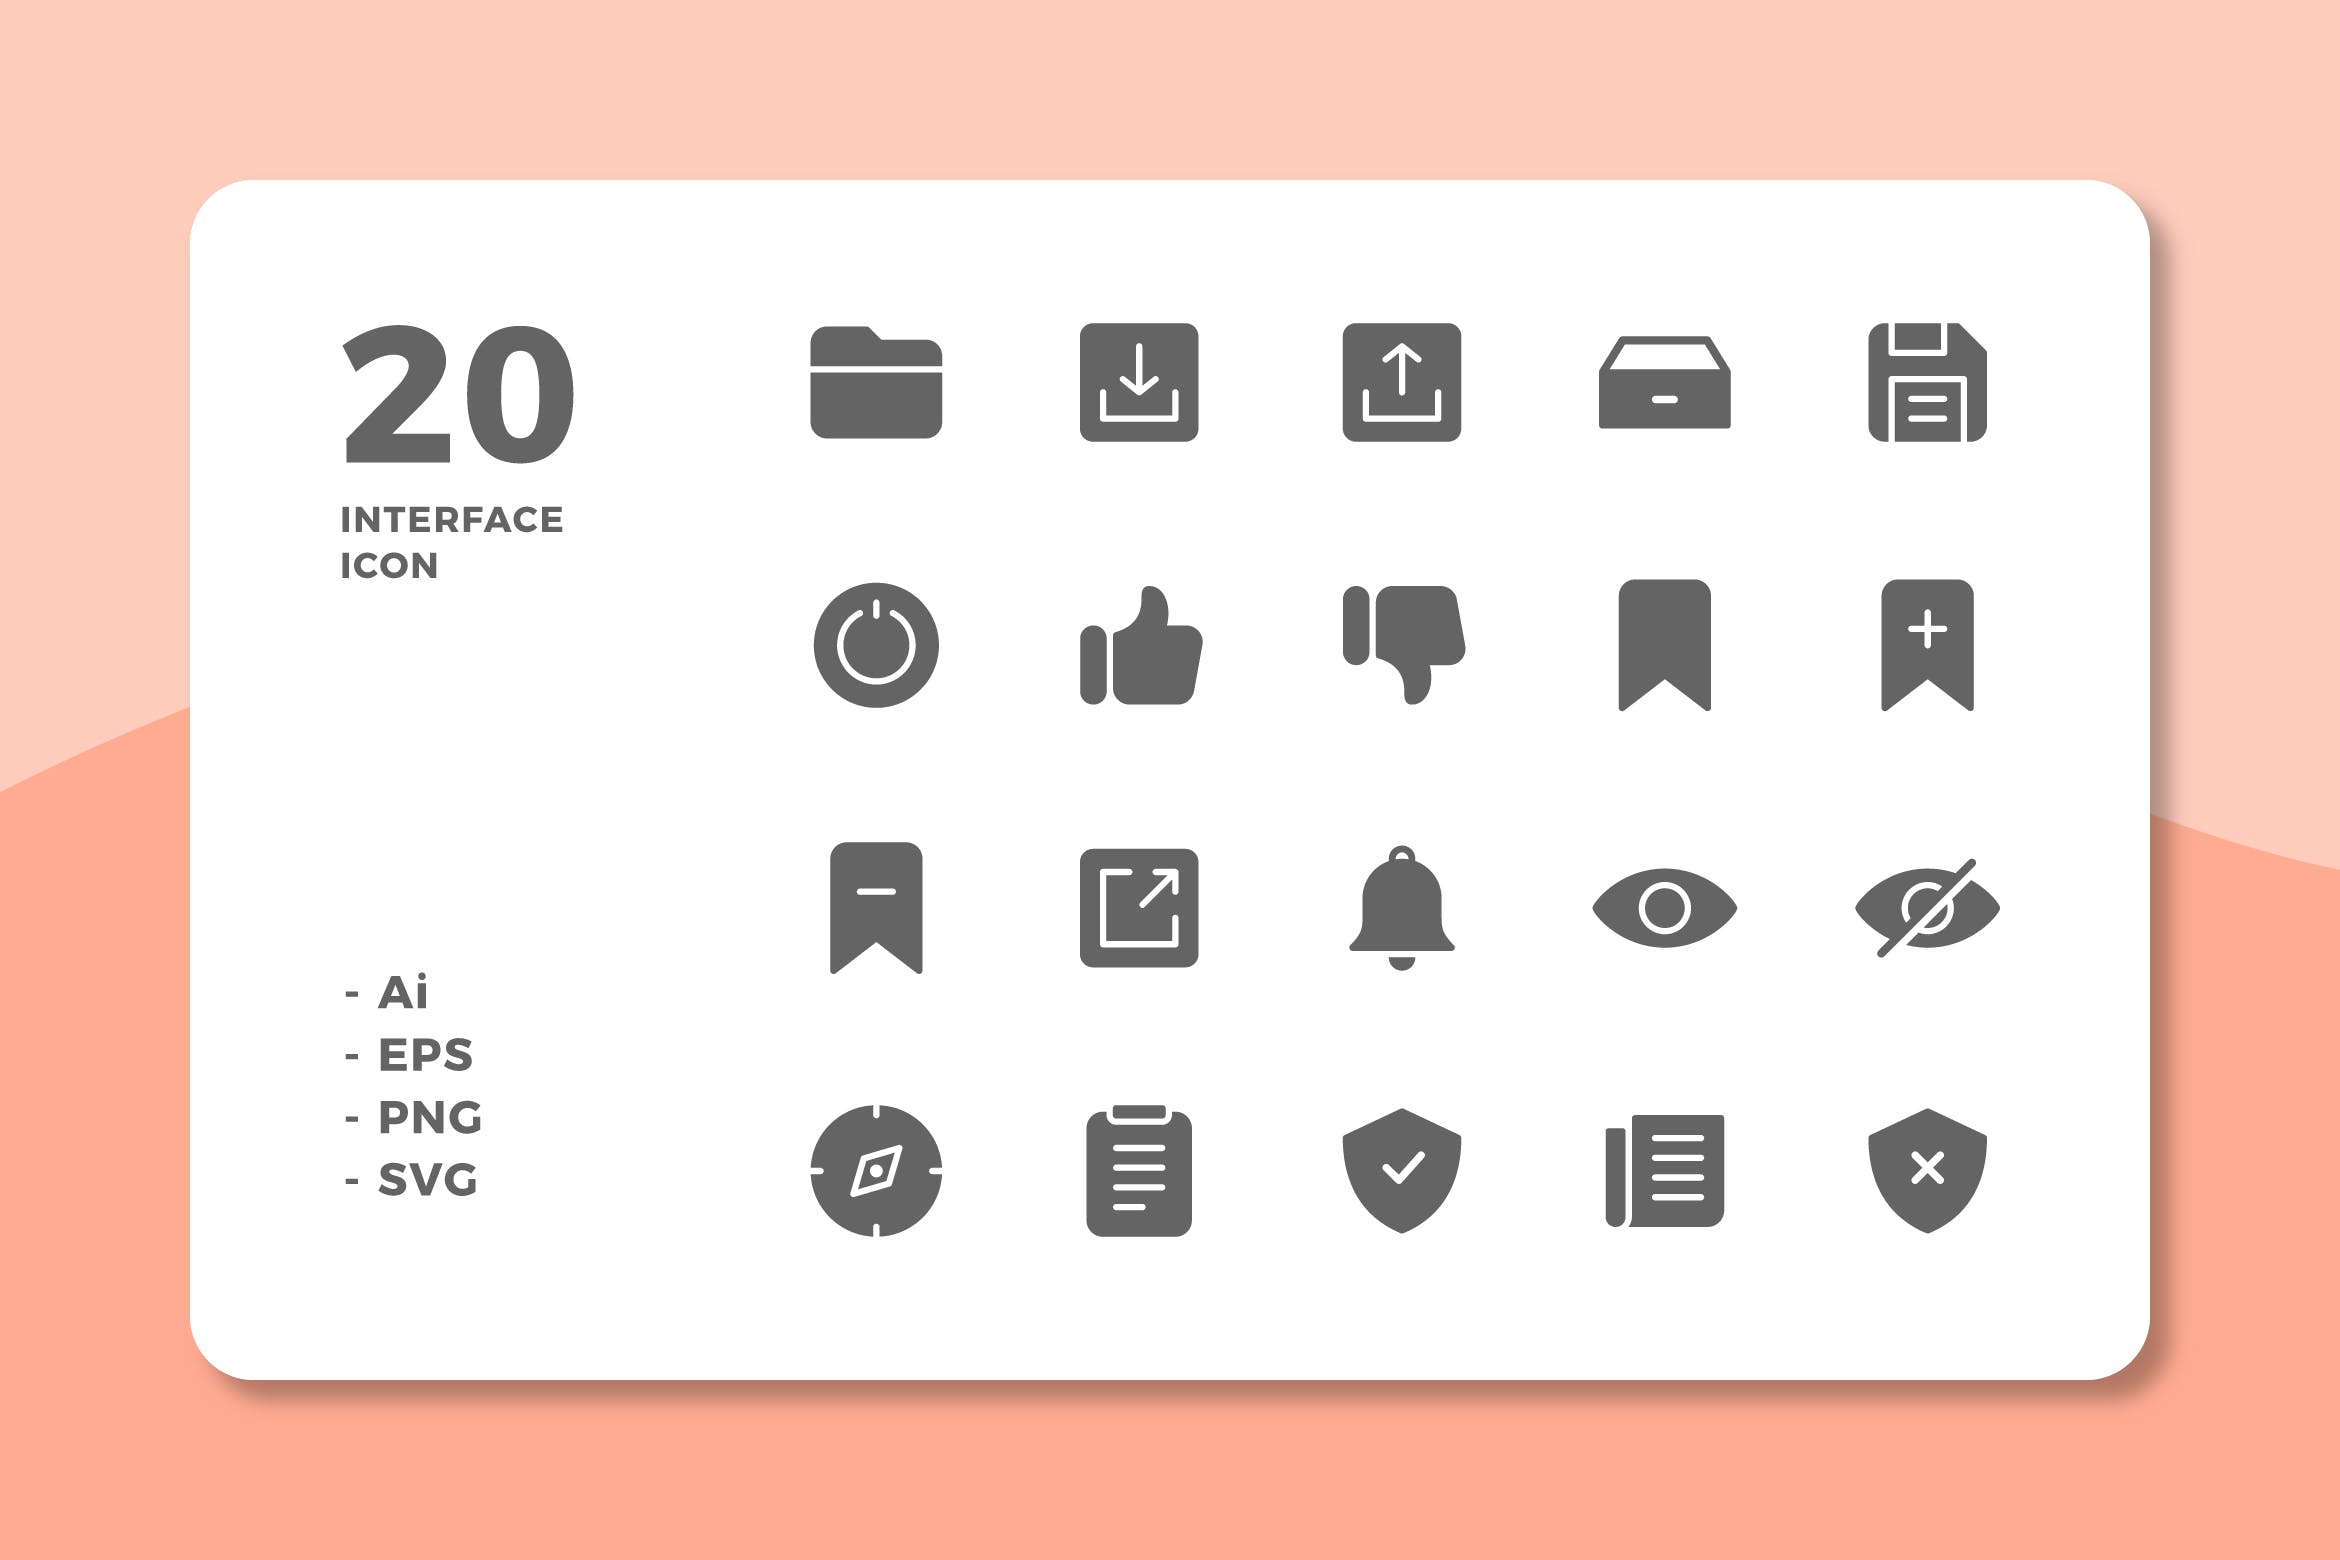 20枚UI界面设计APP操作选项第一素材精选图标v3 20 Interface Icons Vol.3 (Solid)插图